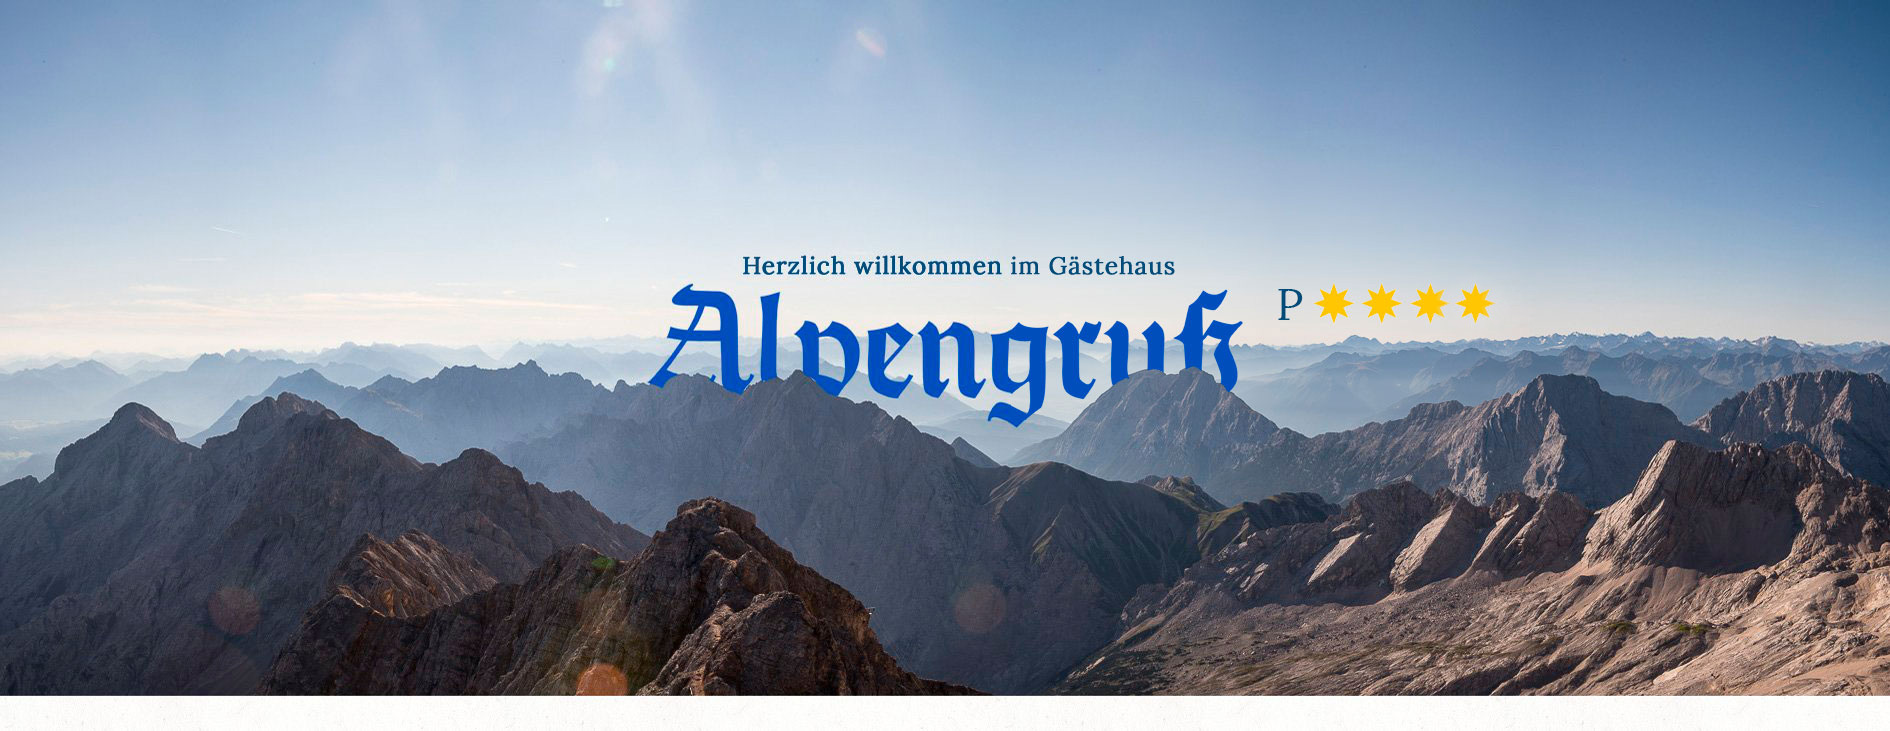 Urlaub in Bayern - Alpenwelt Karwendel - Gästehaus Alpengruß